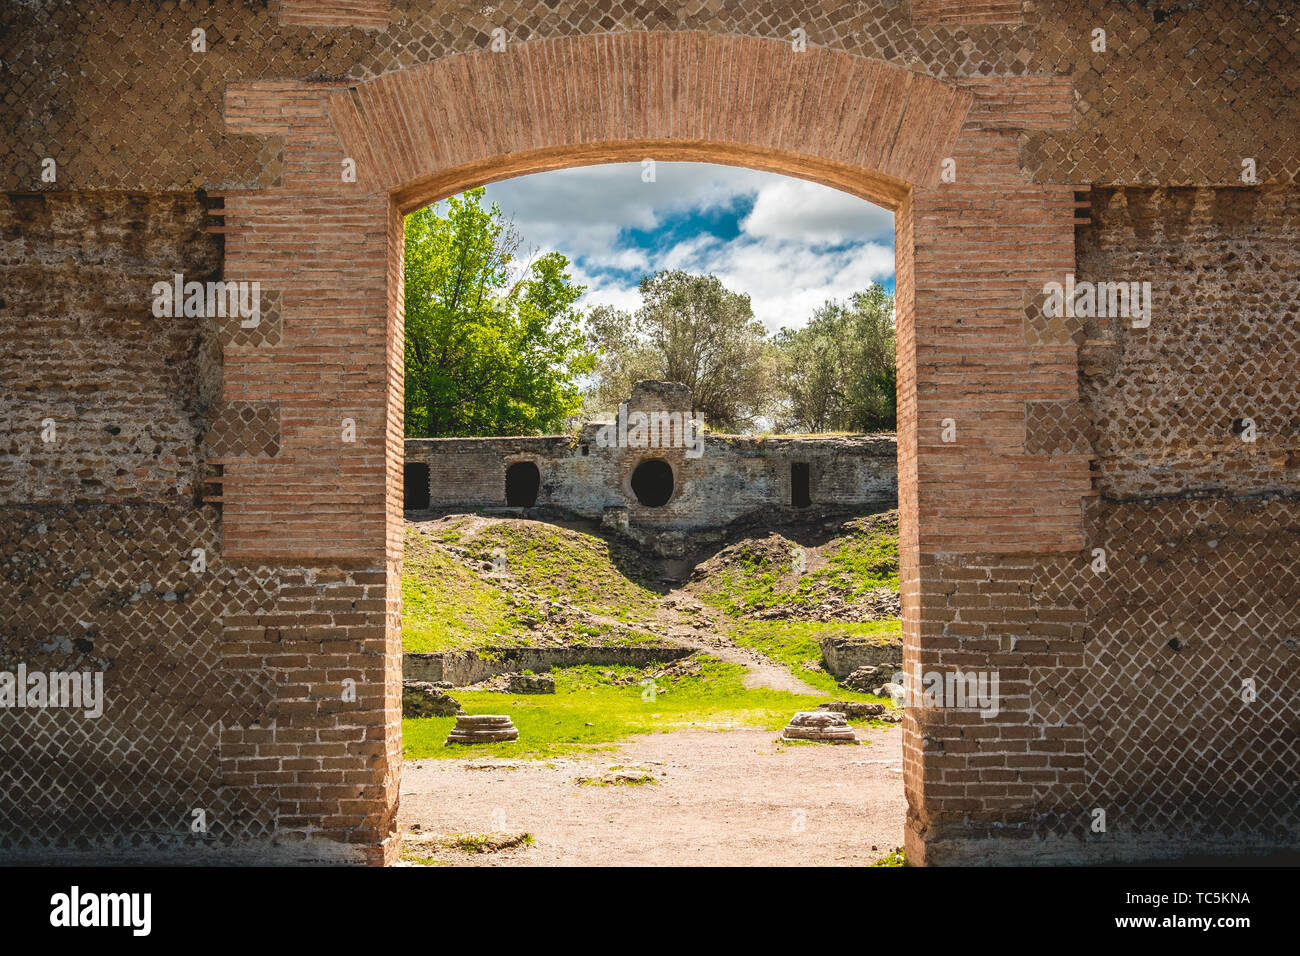 Ruines d'archéologie civilisation romaine catacombes à Rome Tivoli - Latium - Italie Banque D'Images